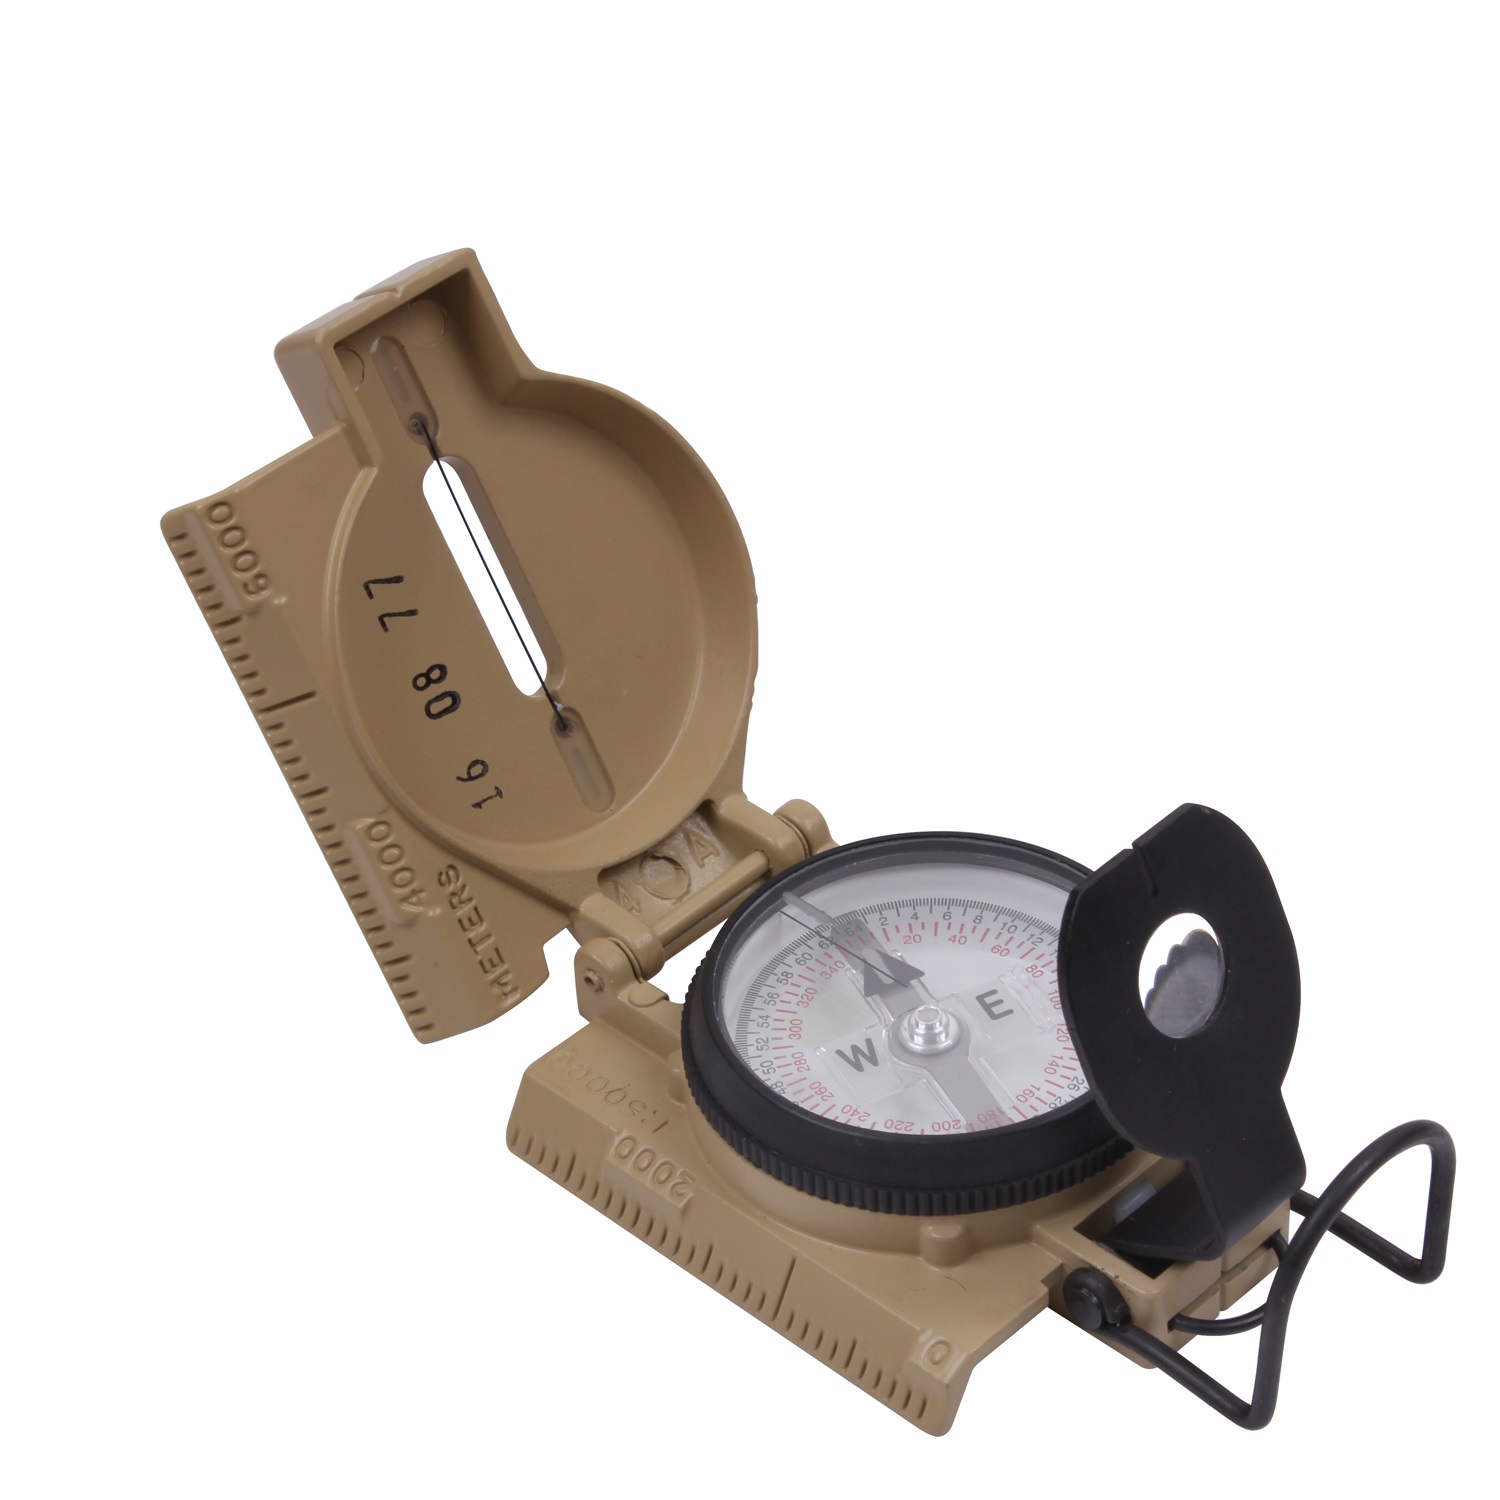 Heißer Verkauf Portable faltbare Linse Kompass amerikanische Militär Mode M